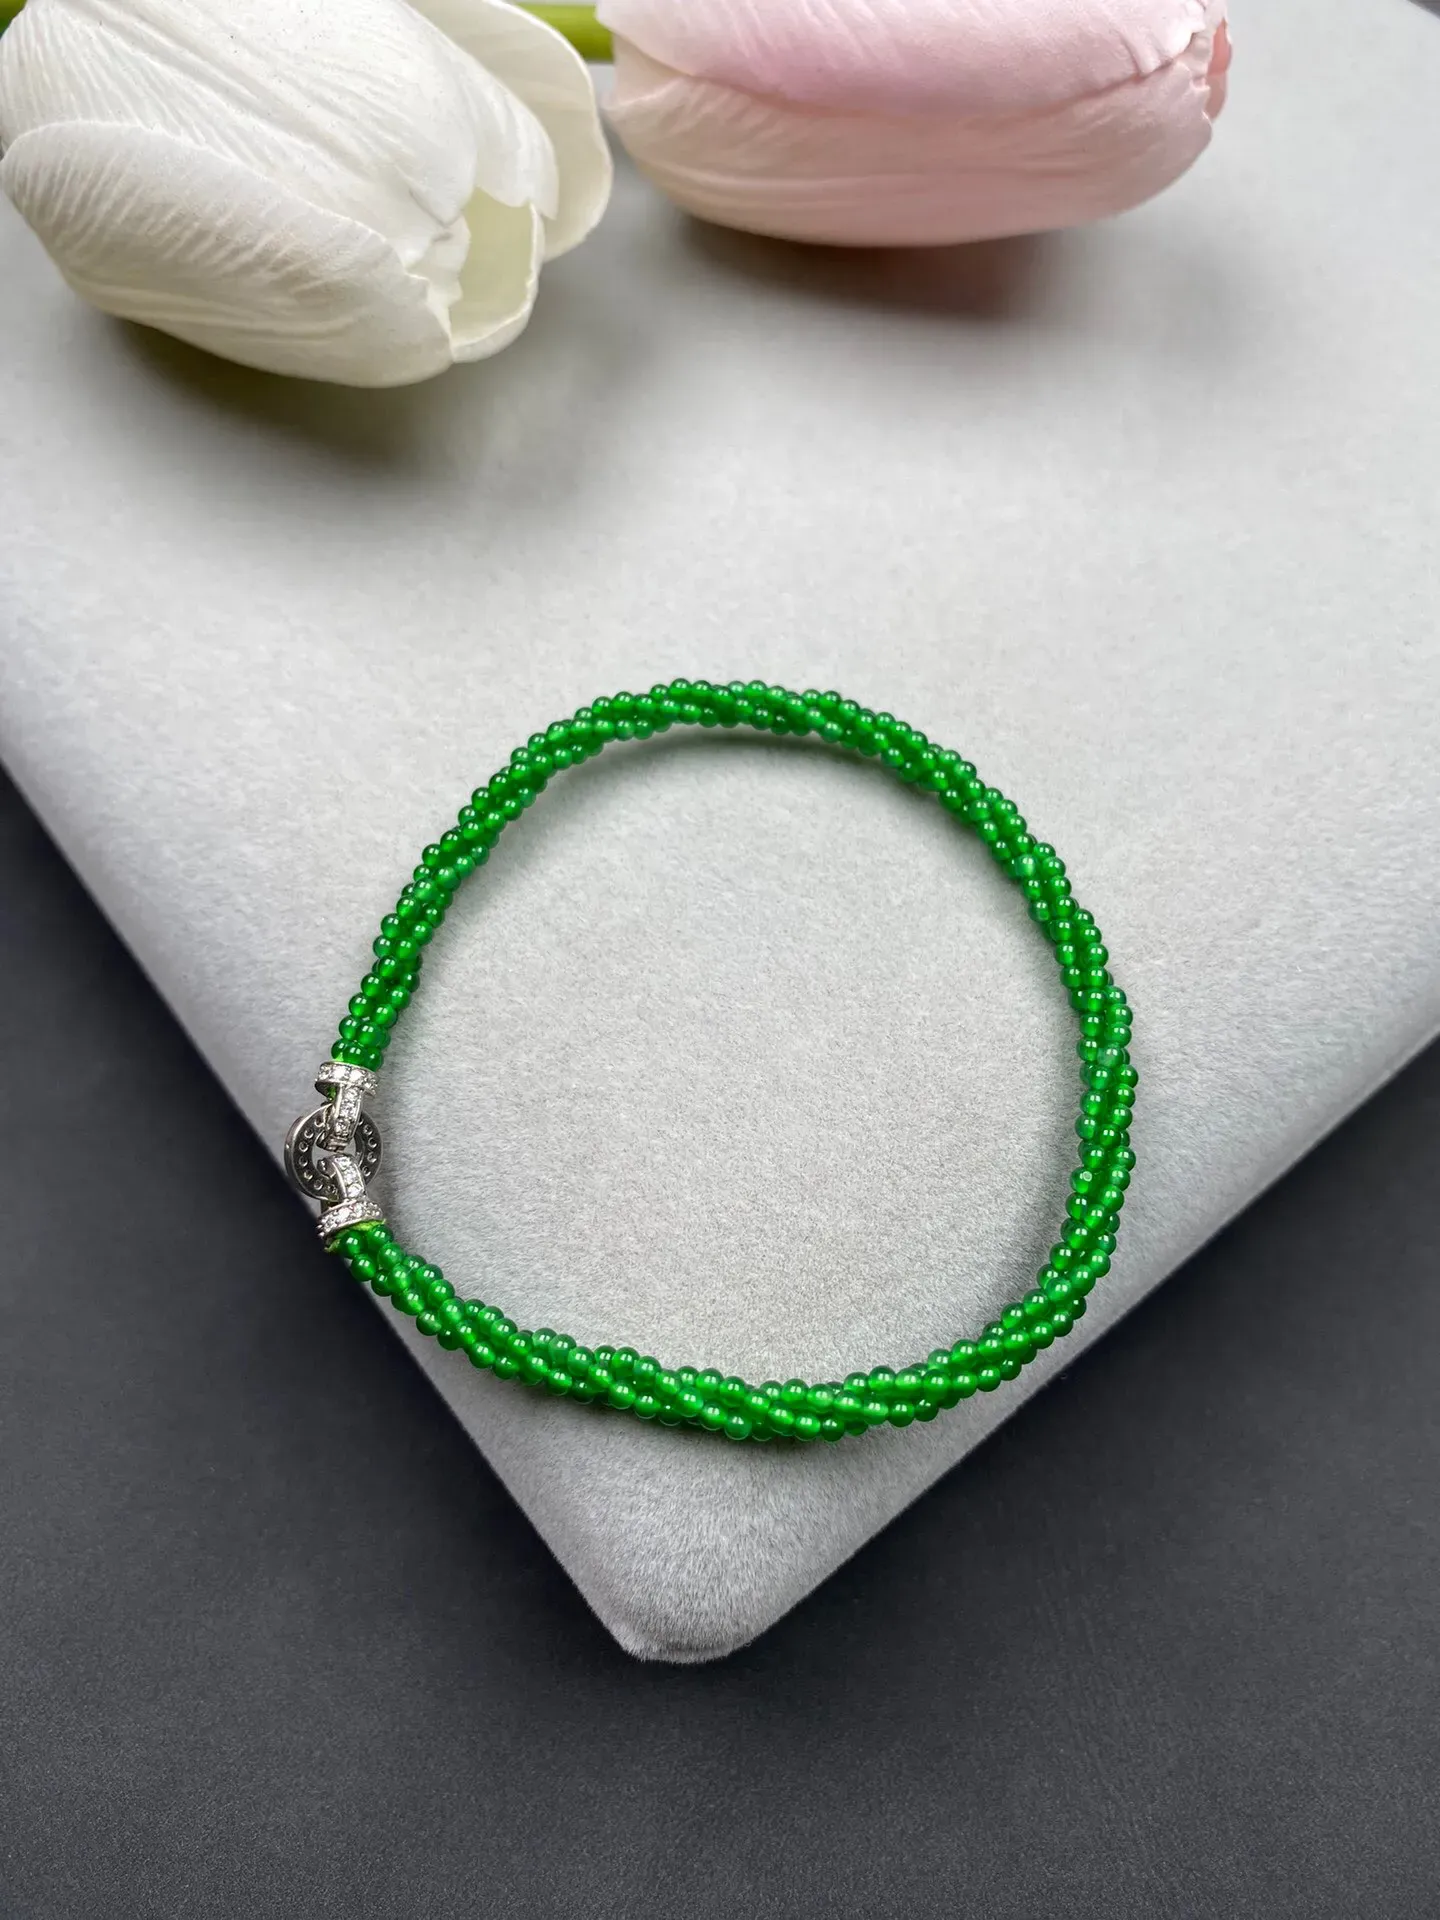 冰种满绿小米珠手串 颗数约290+珠径2毫米 翠色艳丽 独特精美